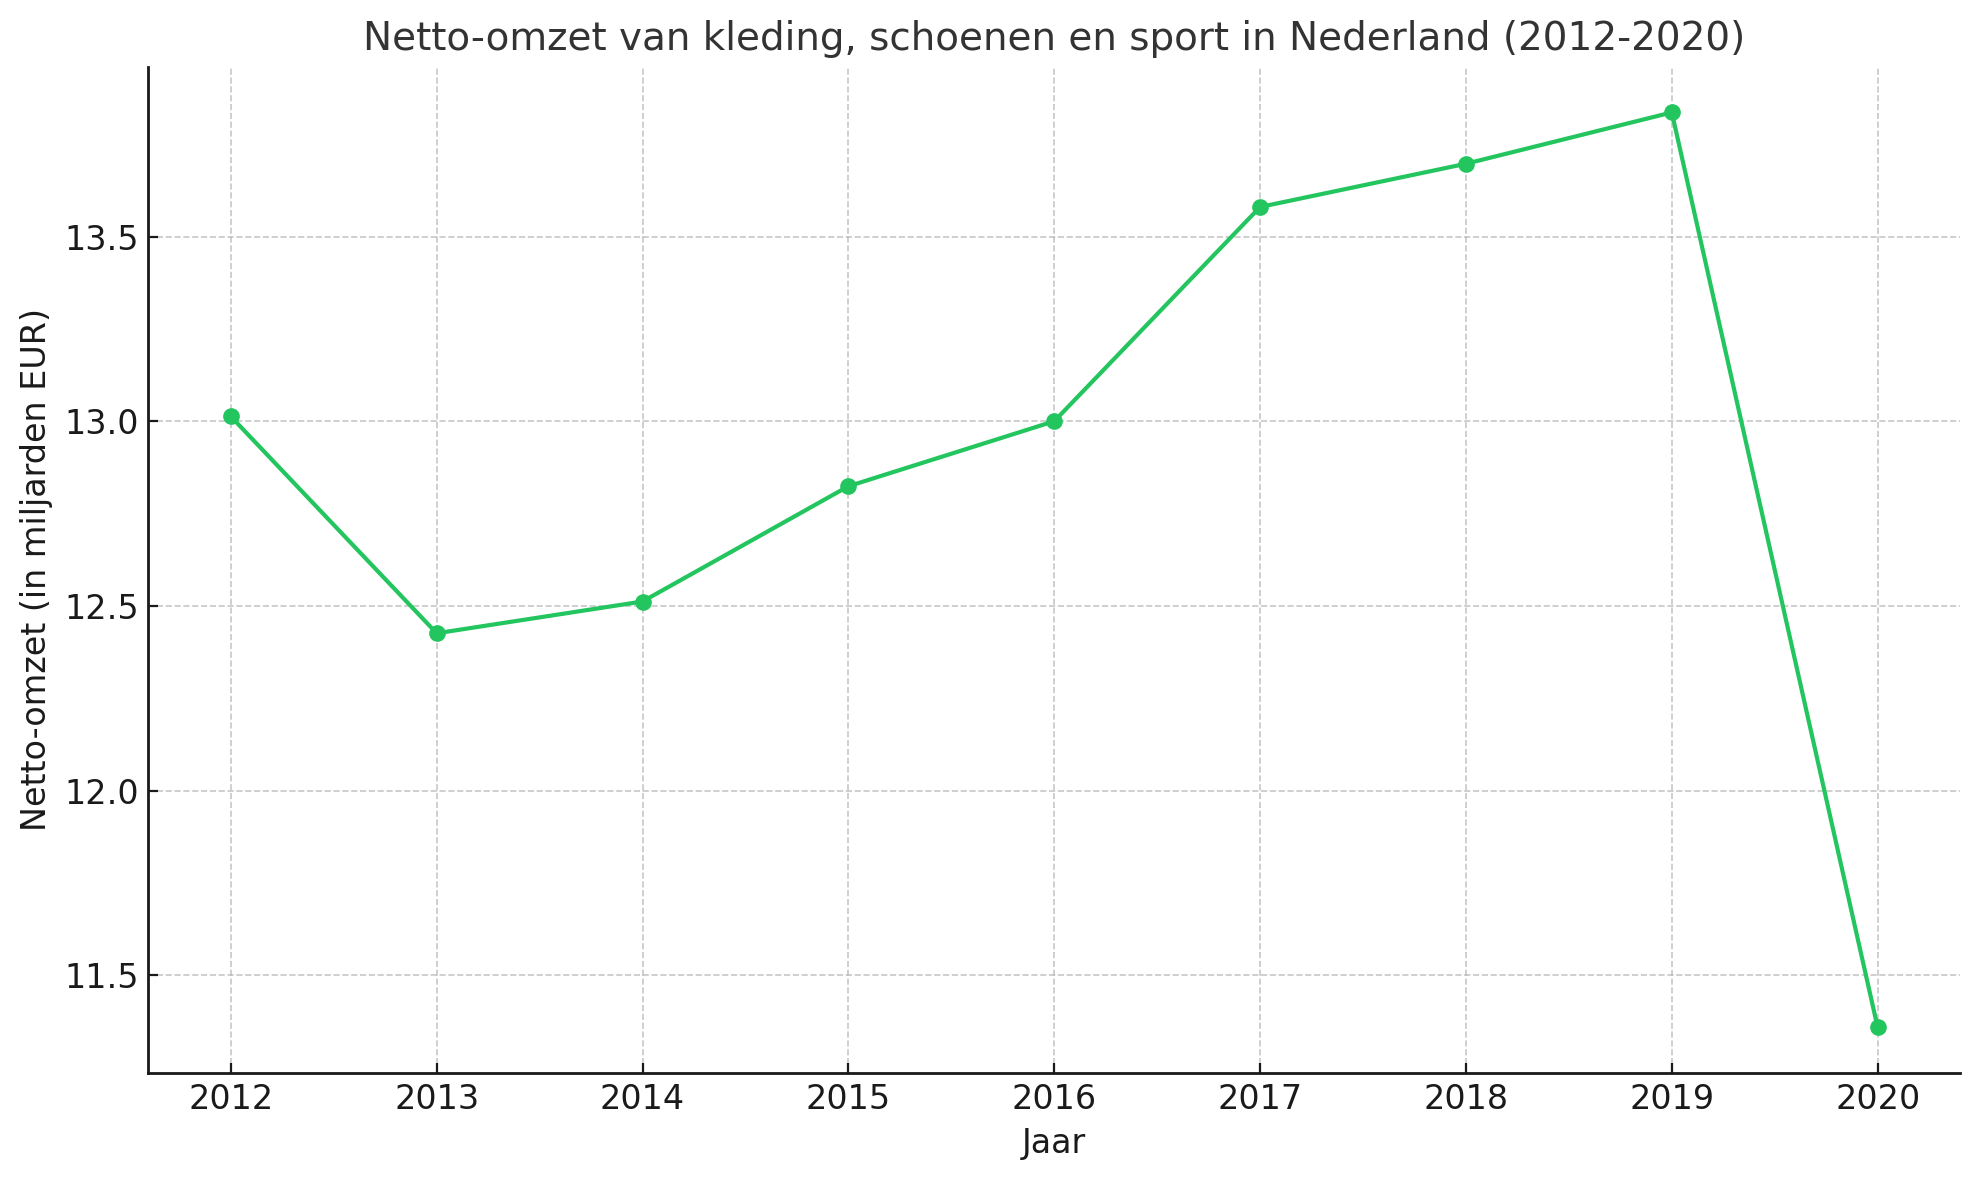 Netto omzet van kleding schoenen en sport in Nederland